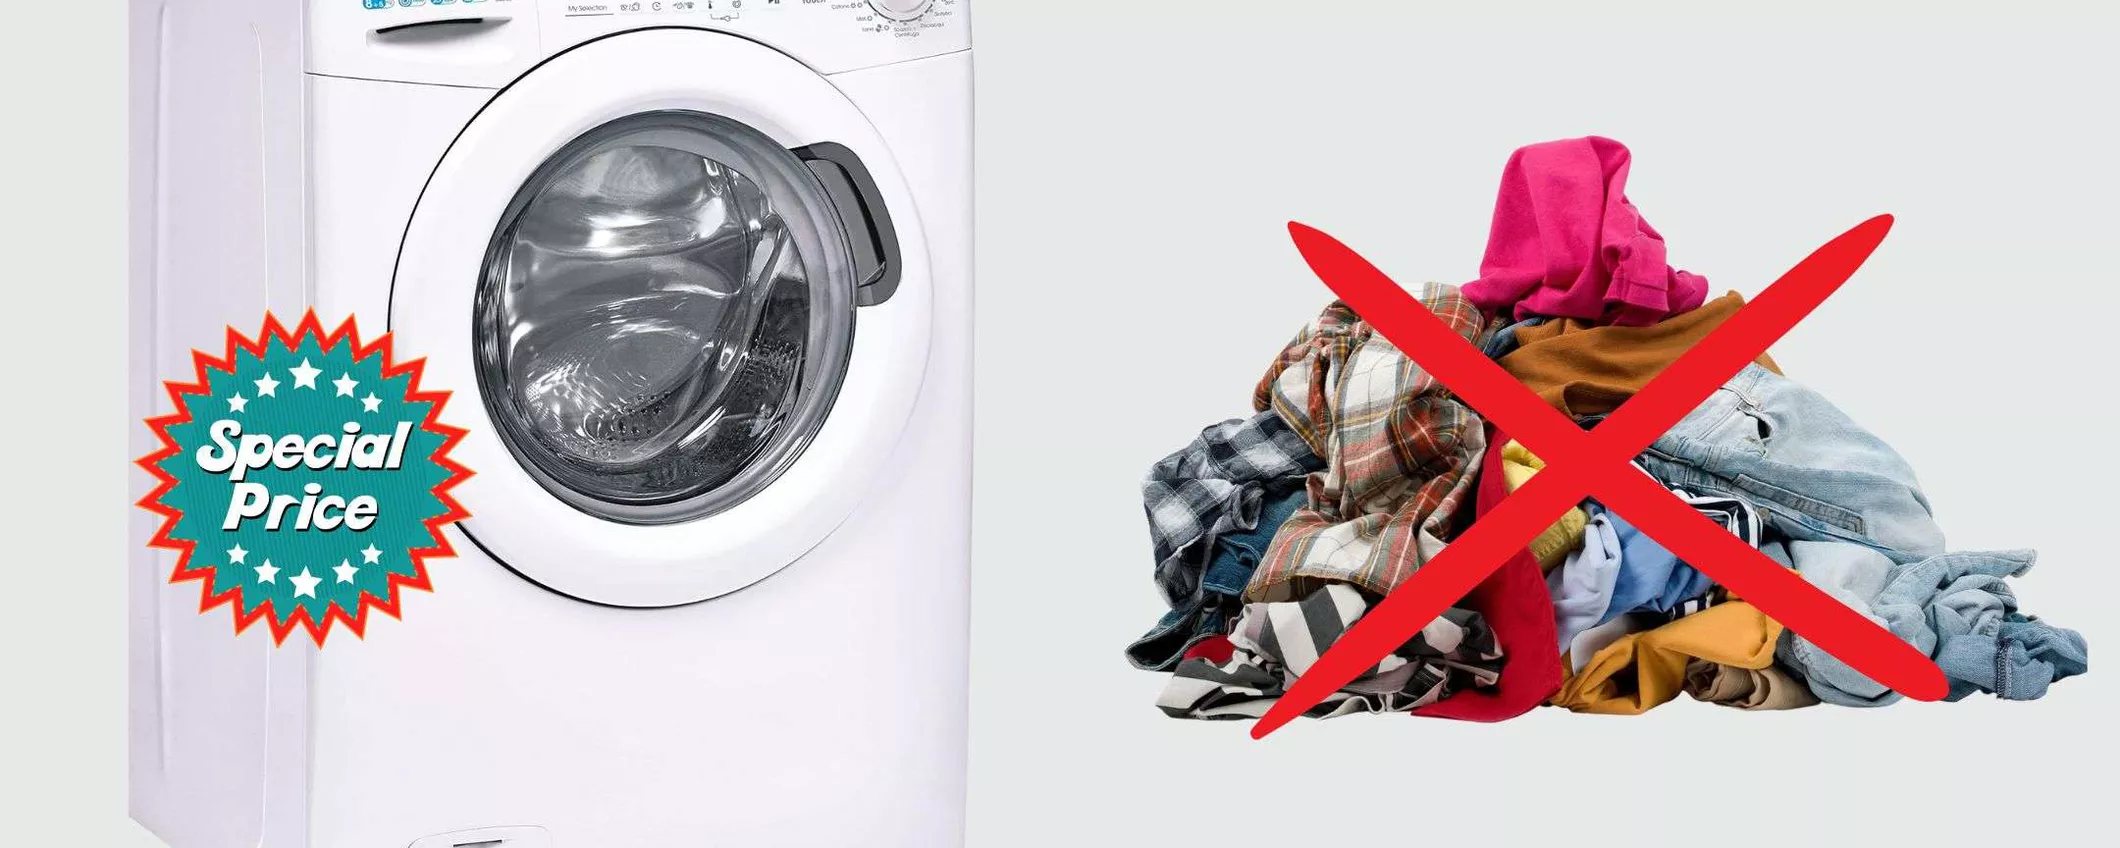 Bucato sempre bagnato ADDIO: lavasciuga smart Candy in promo WOW (399€)